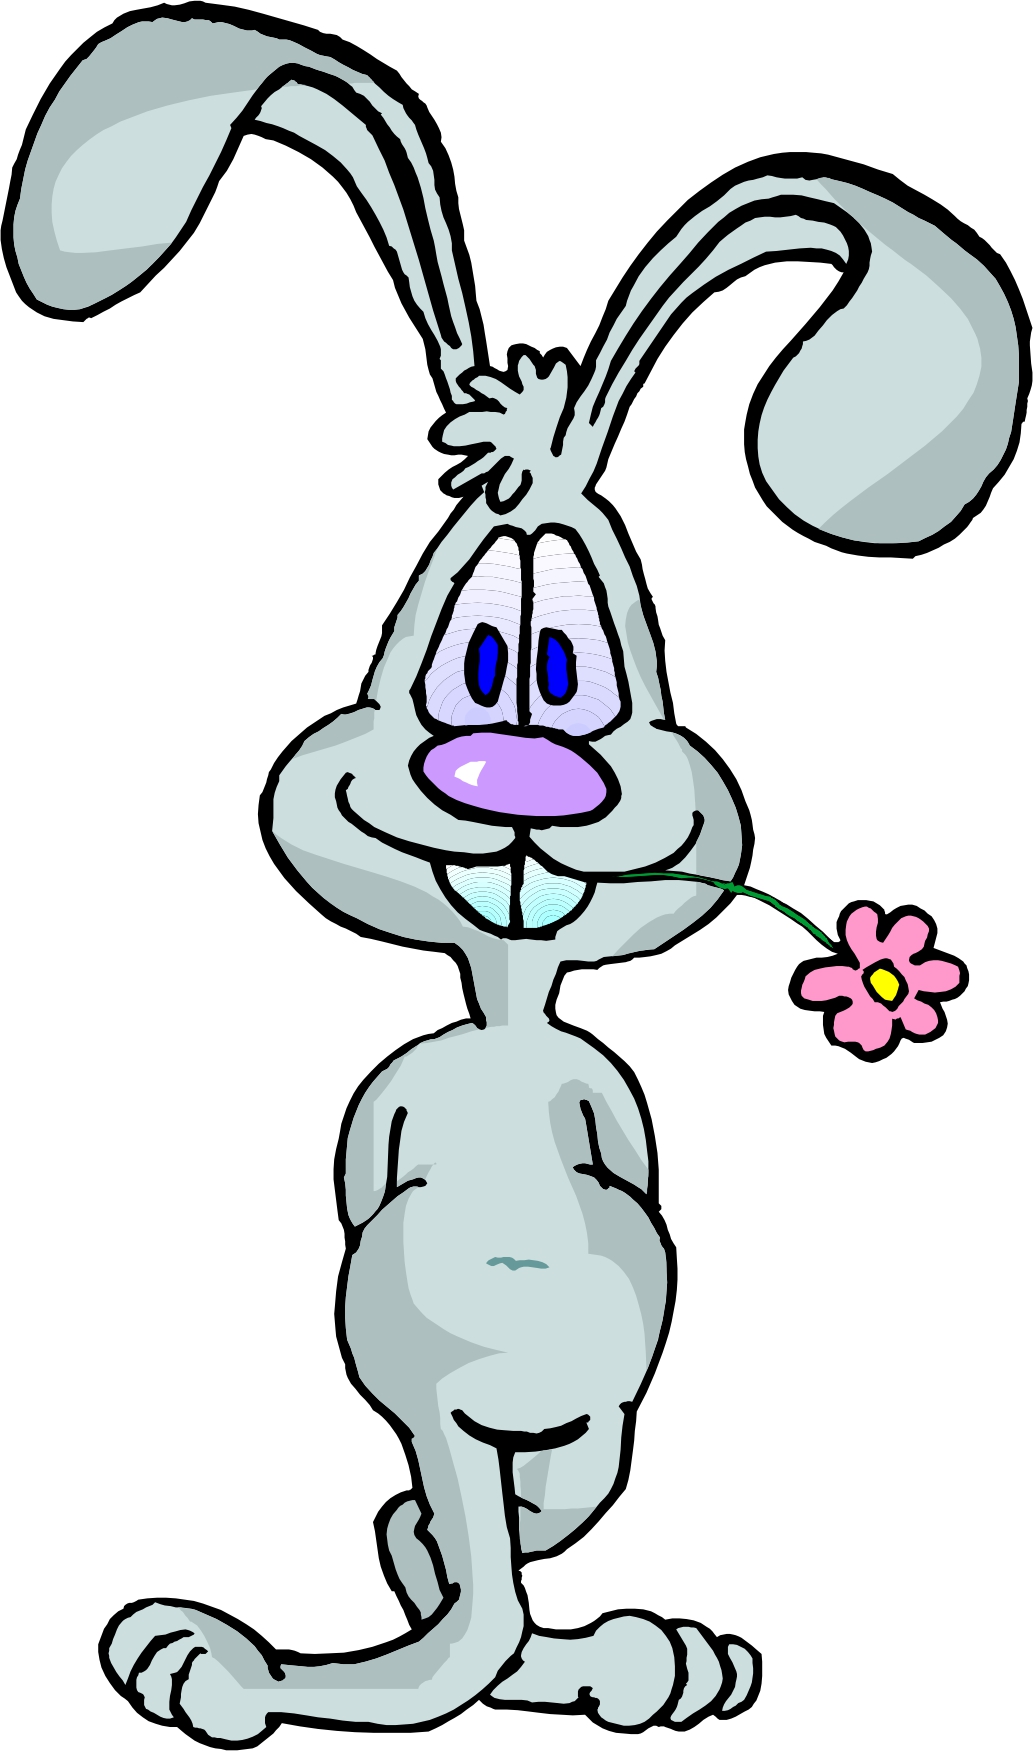 Rabbit Cartoon Images | Free Download Clip Art | Free Clip Art ...